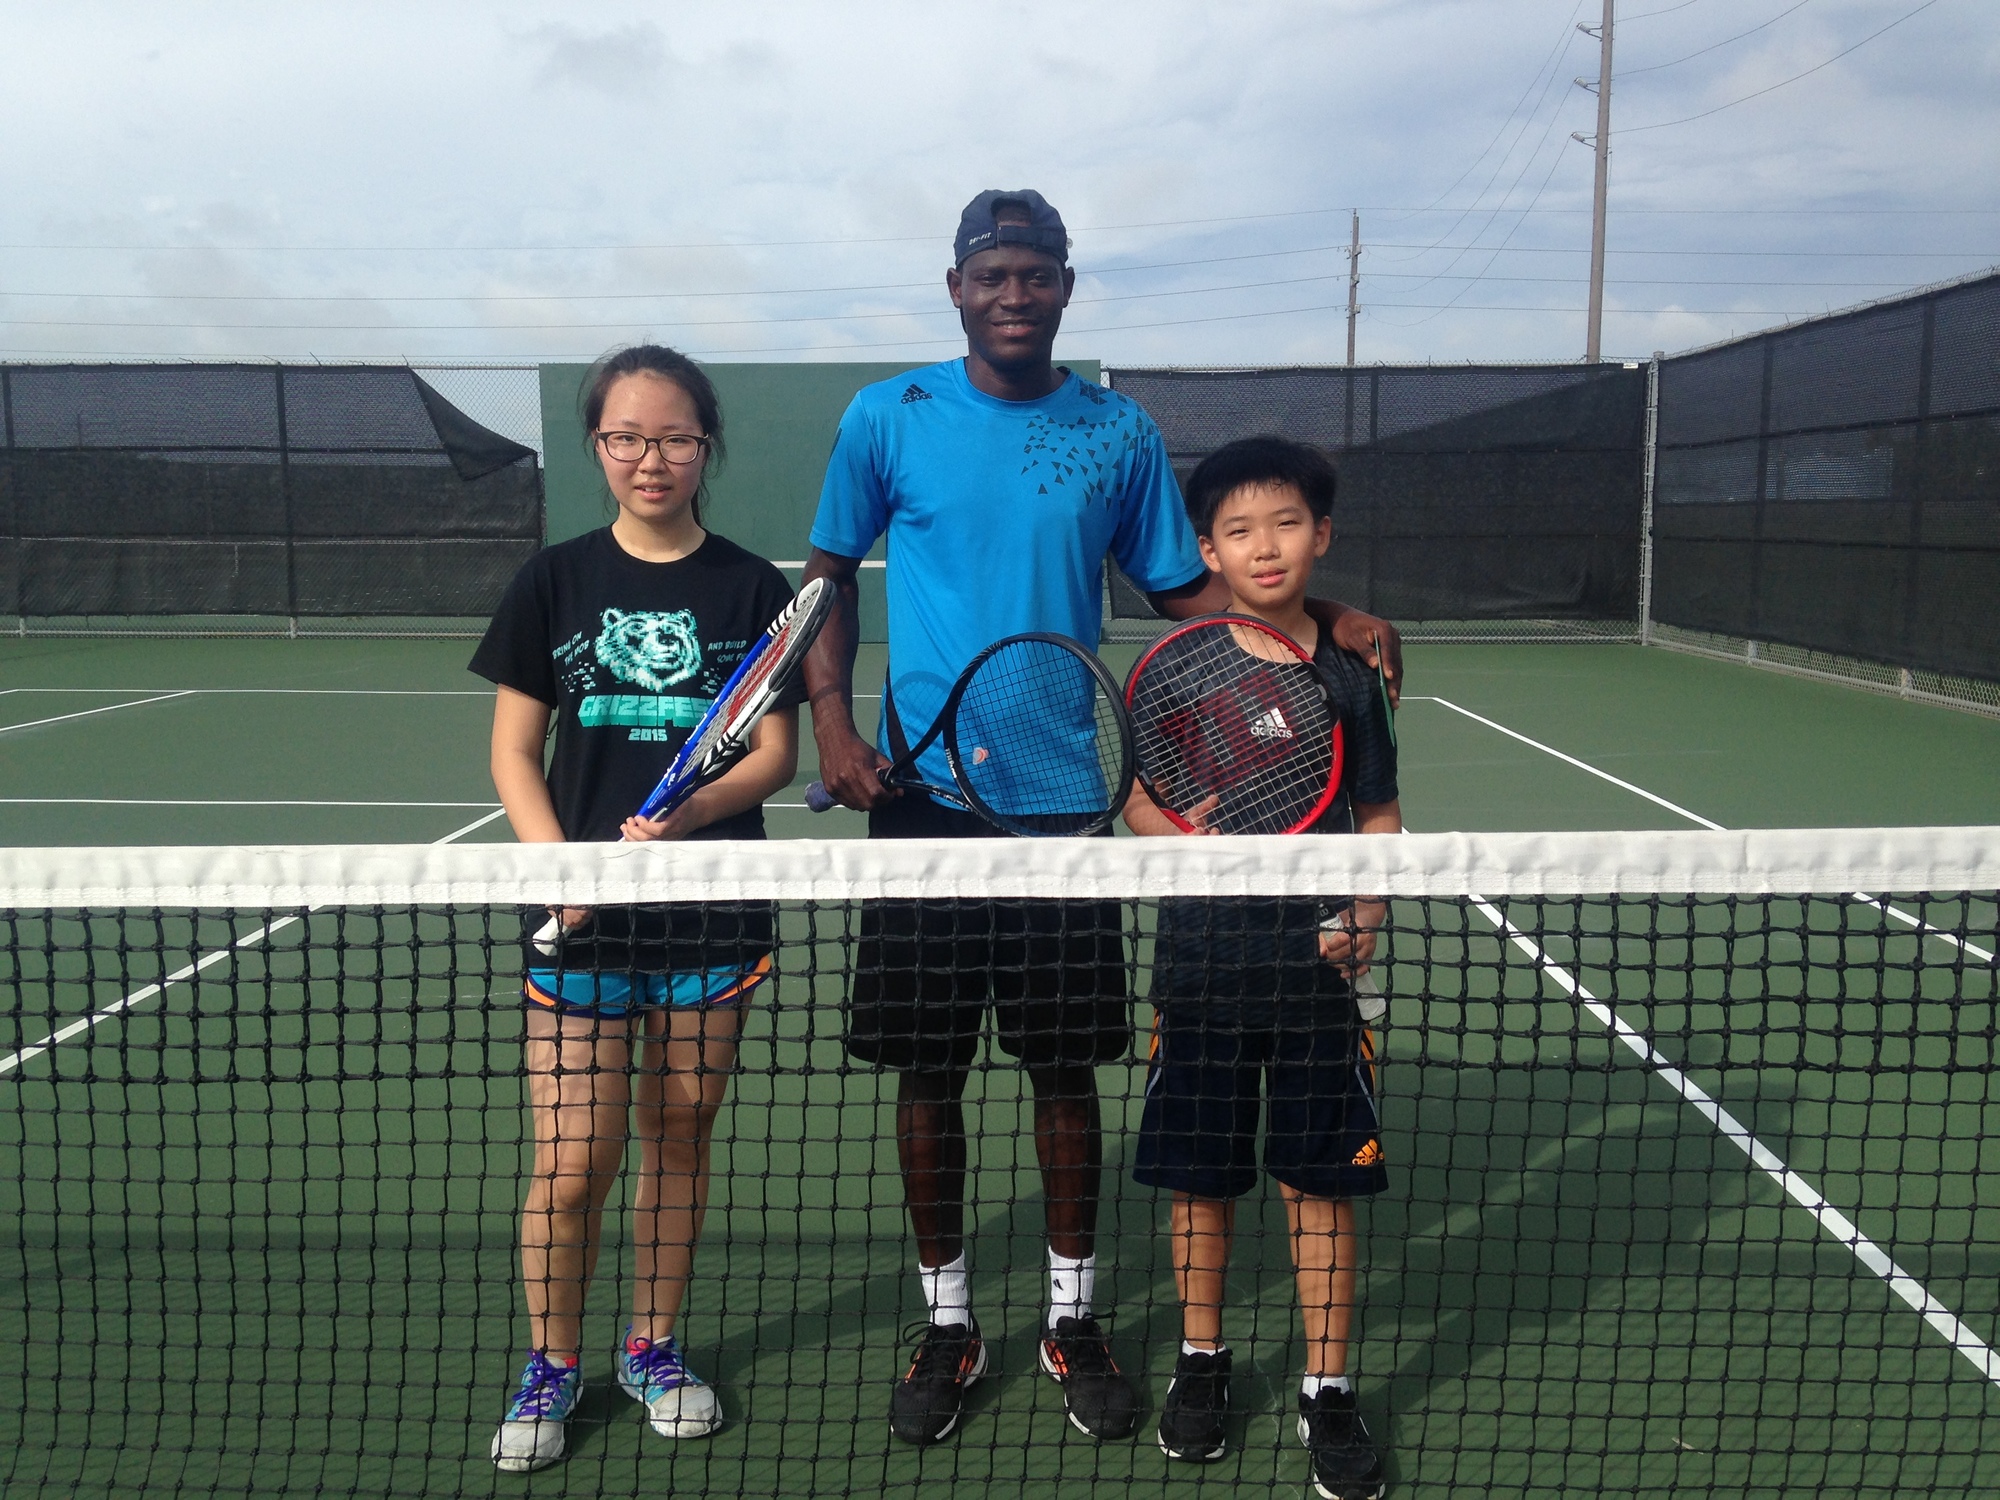 Julius A. teaches tennis lessons in Katy, TX